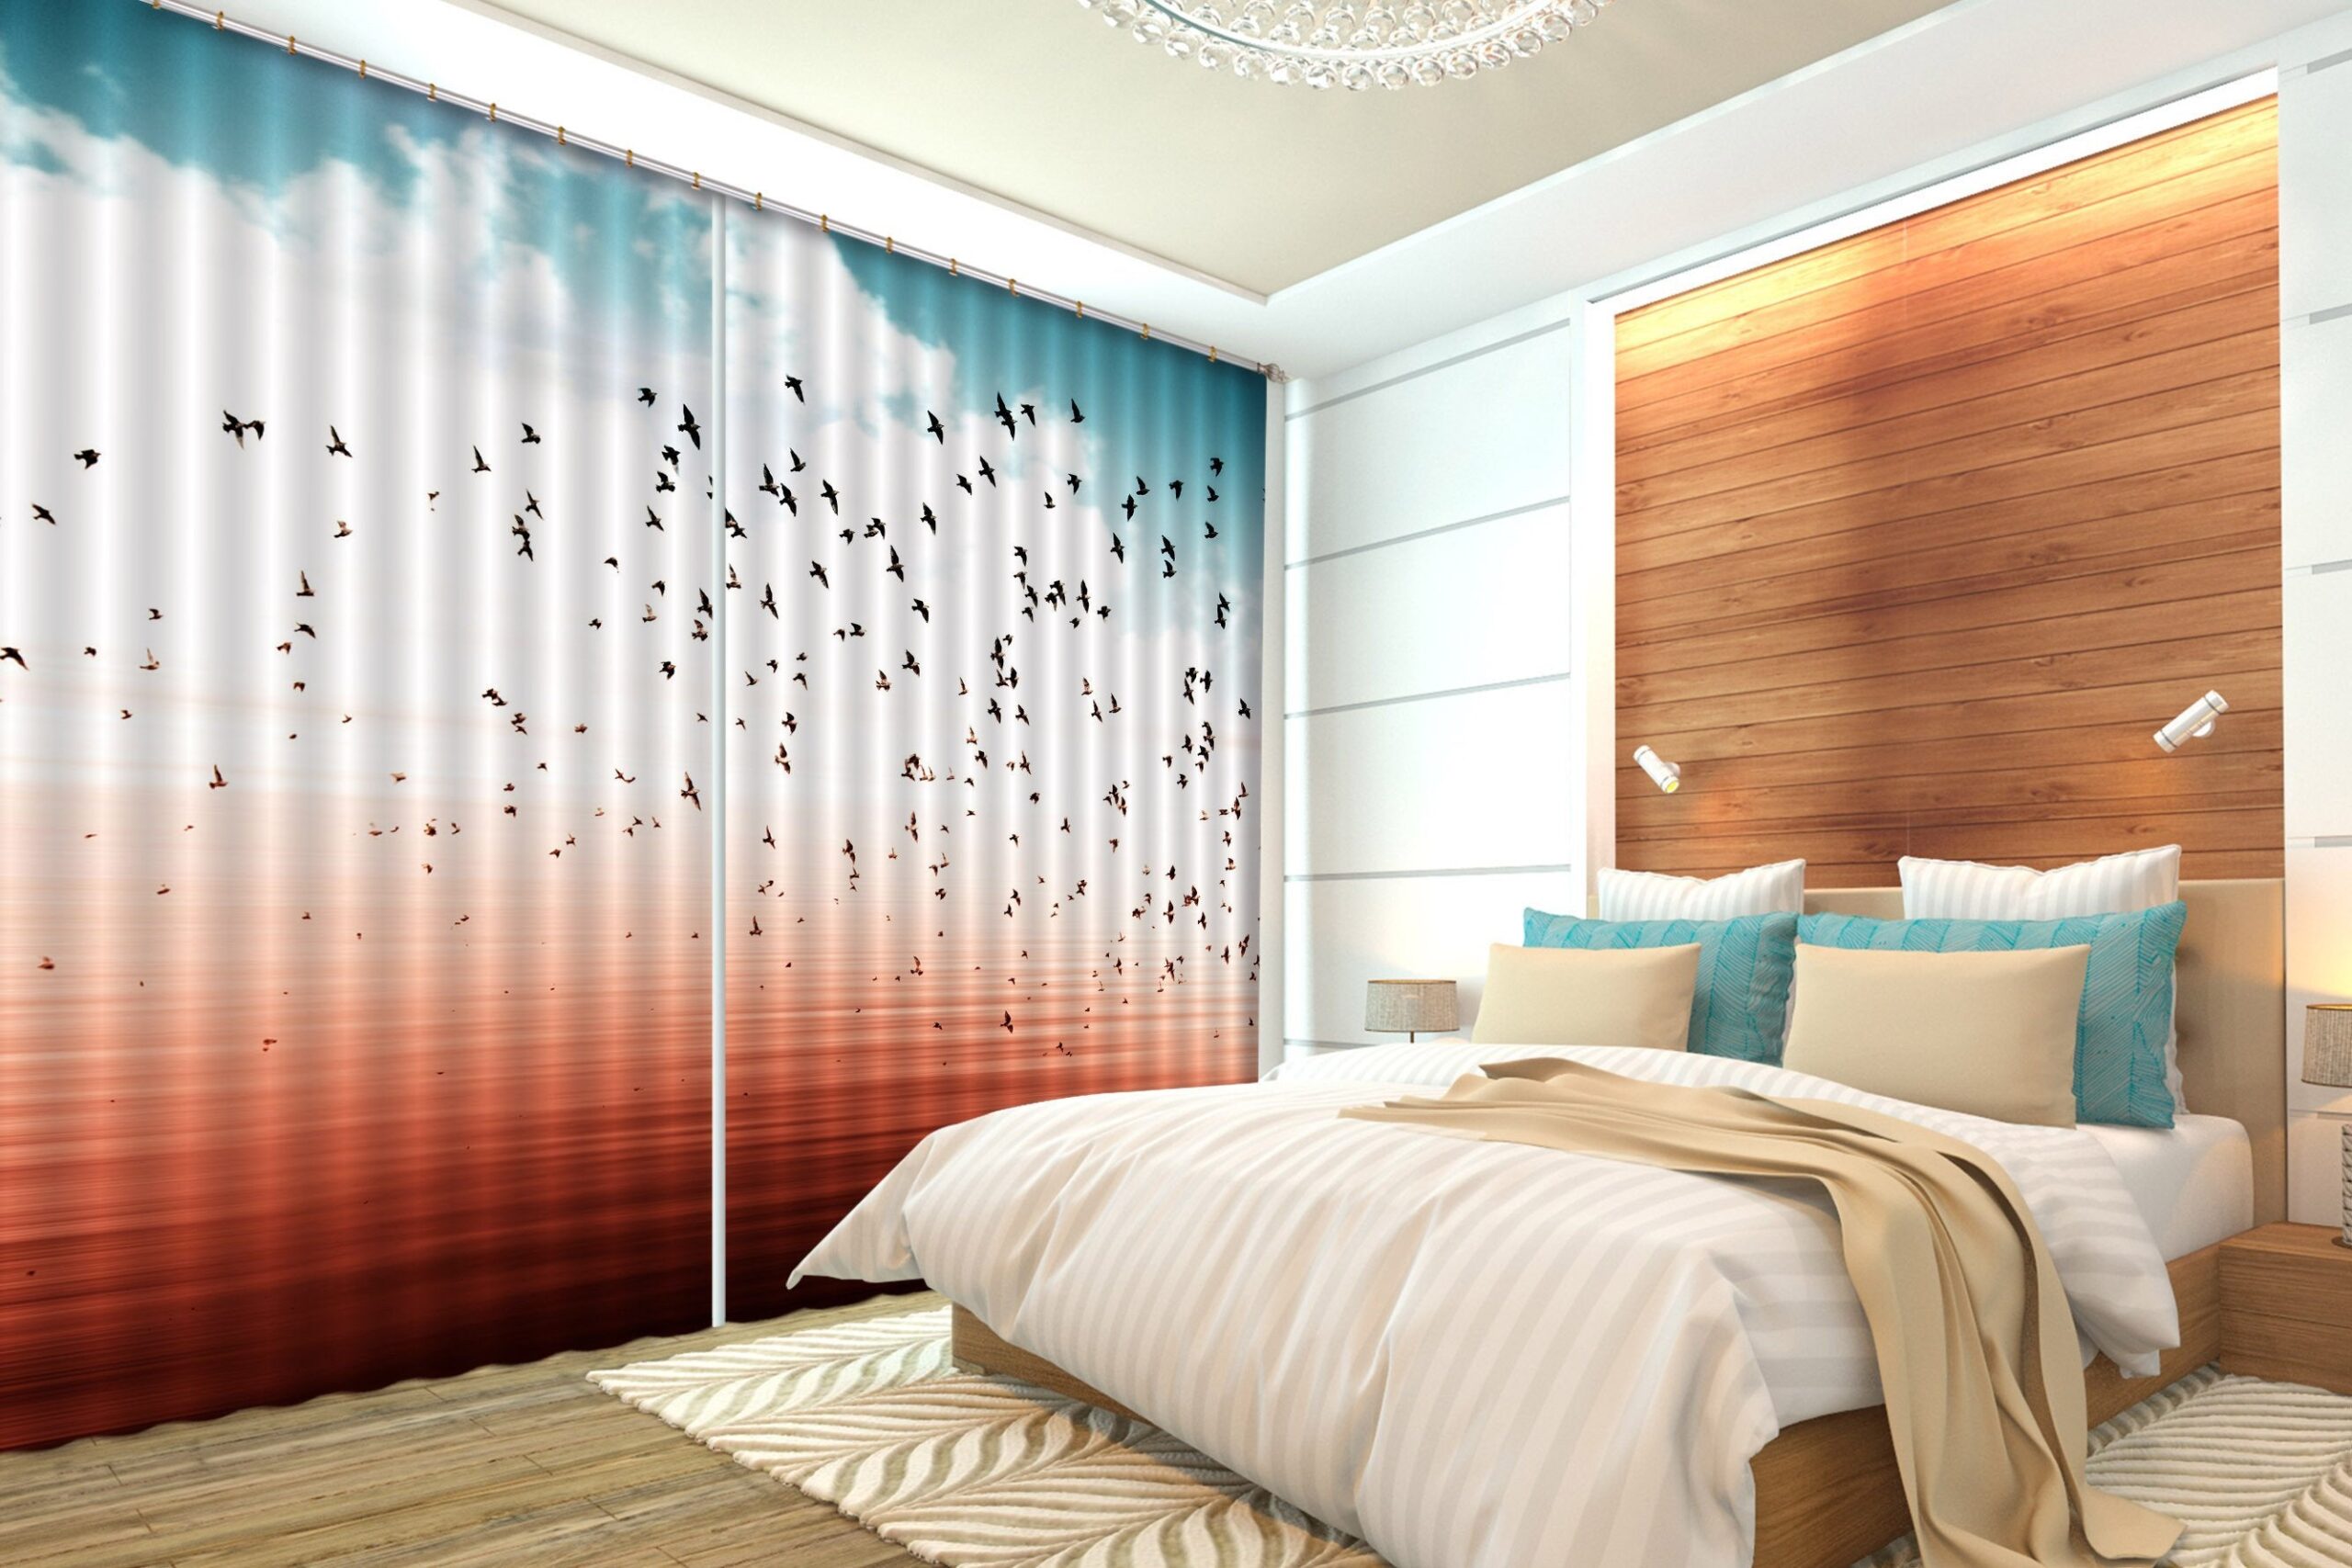 3D Flying Birds 490 Beach Curtains Drapes